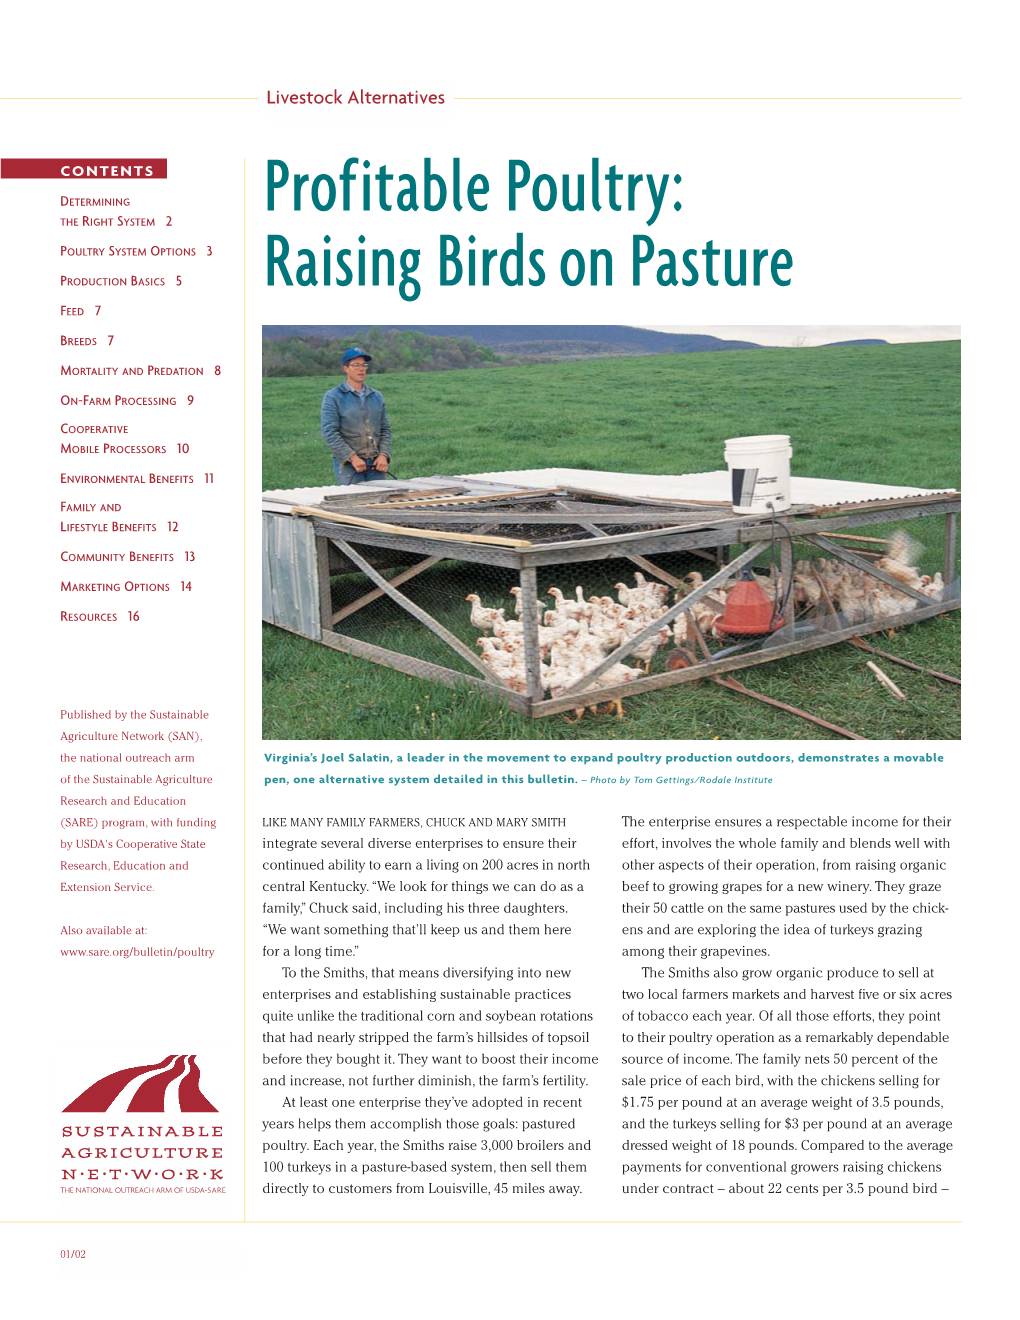 Profitable Poultry: R S 2